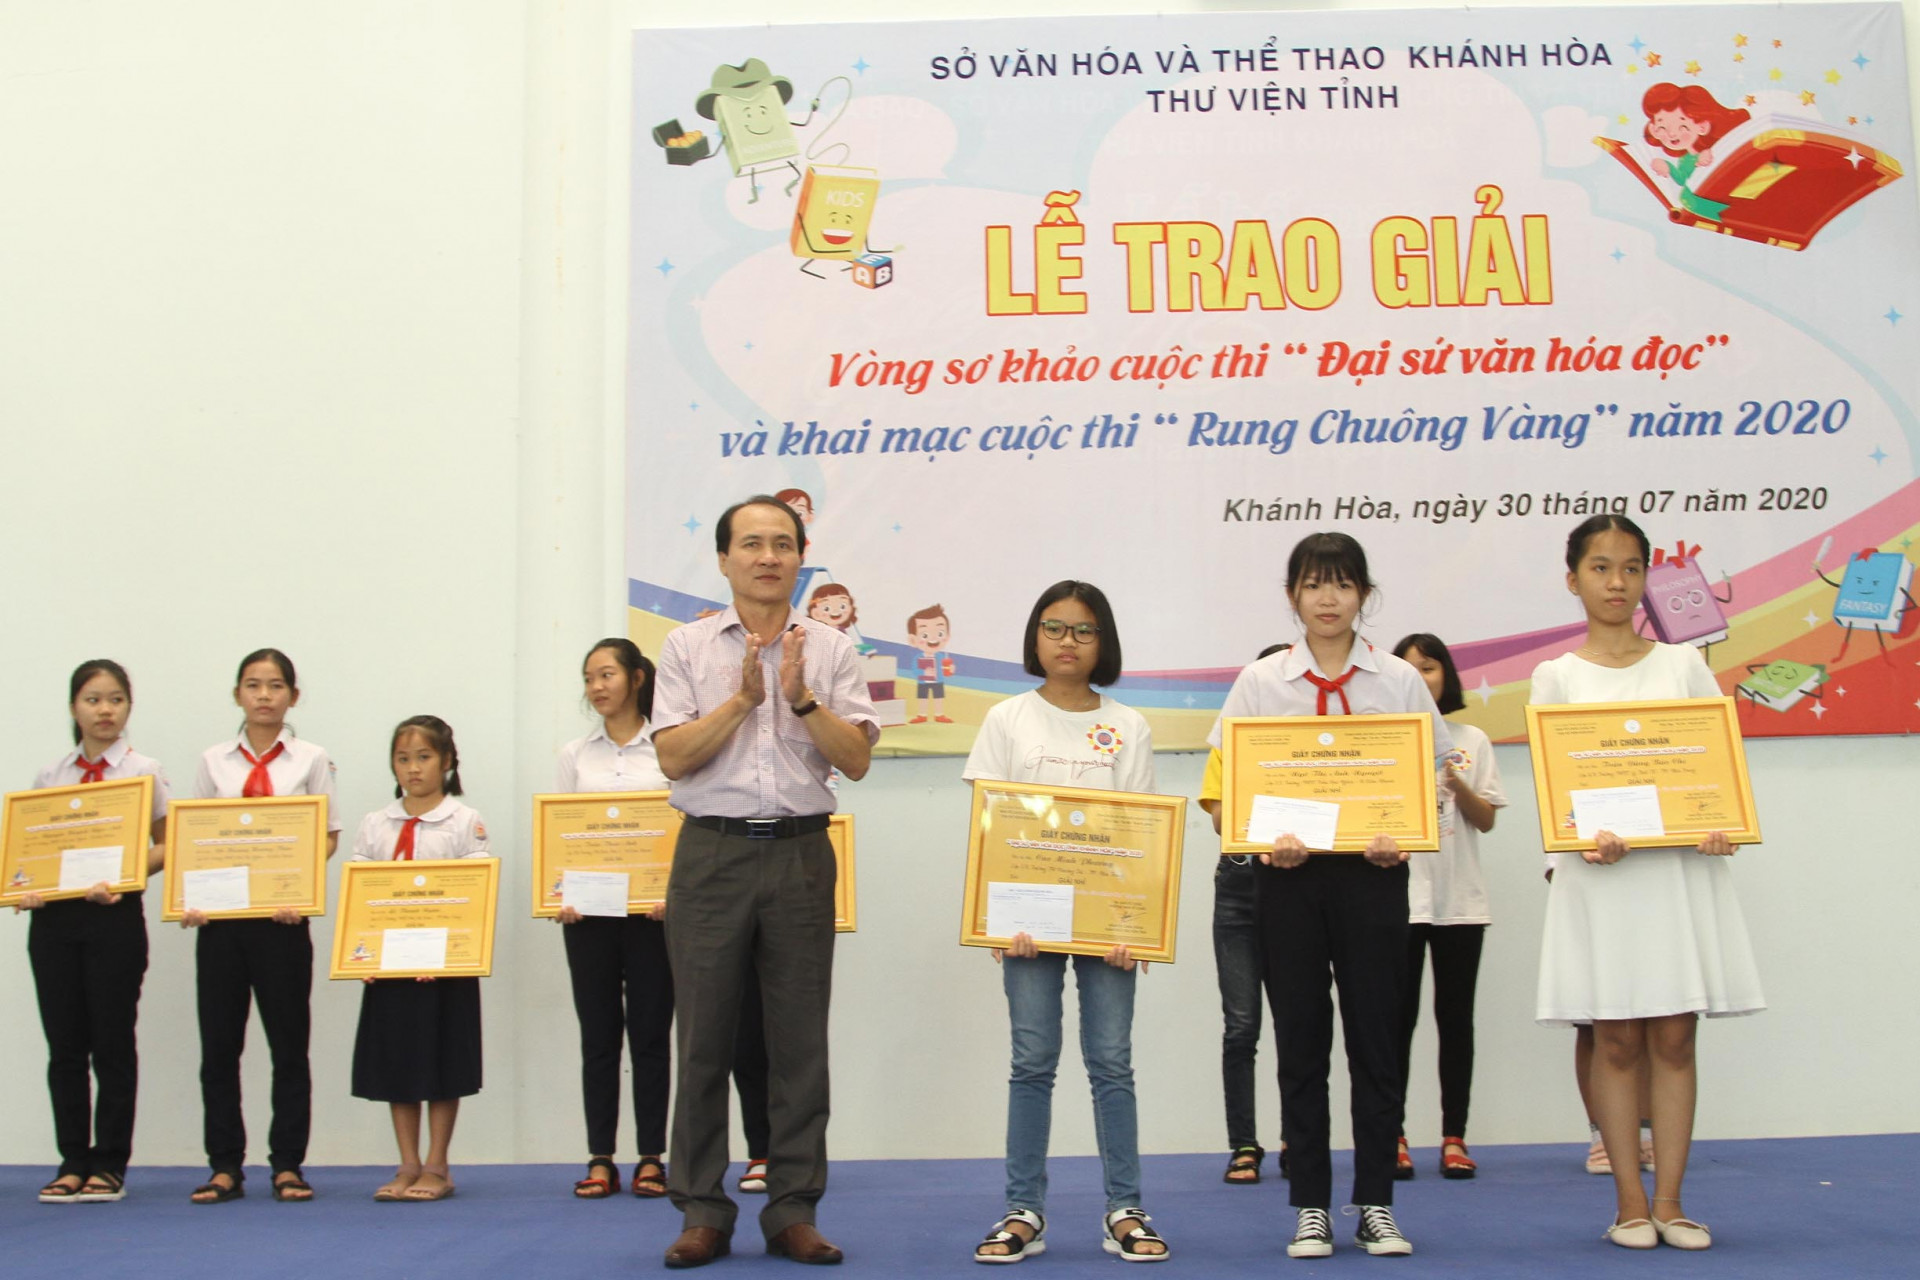 Thư viện tỉnh Khánh Hòa tổ chức lễ trao giải cuộc thi Đại sứ văn hóa đọc cho các em học sinh đạt kết quả xuất sắc. 